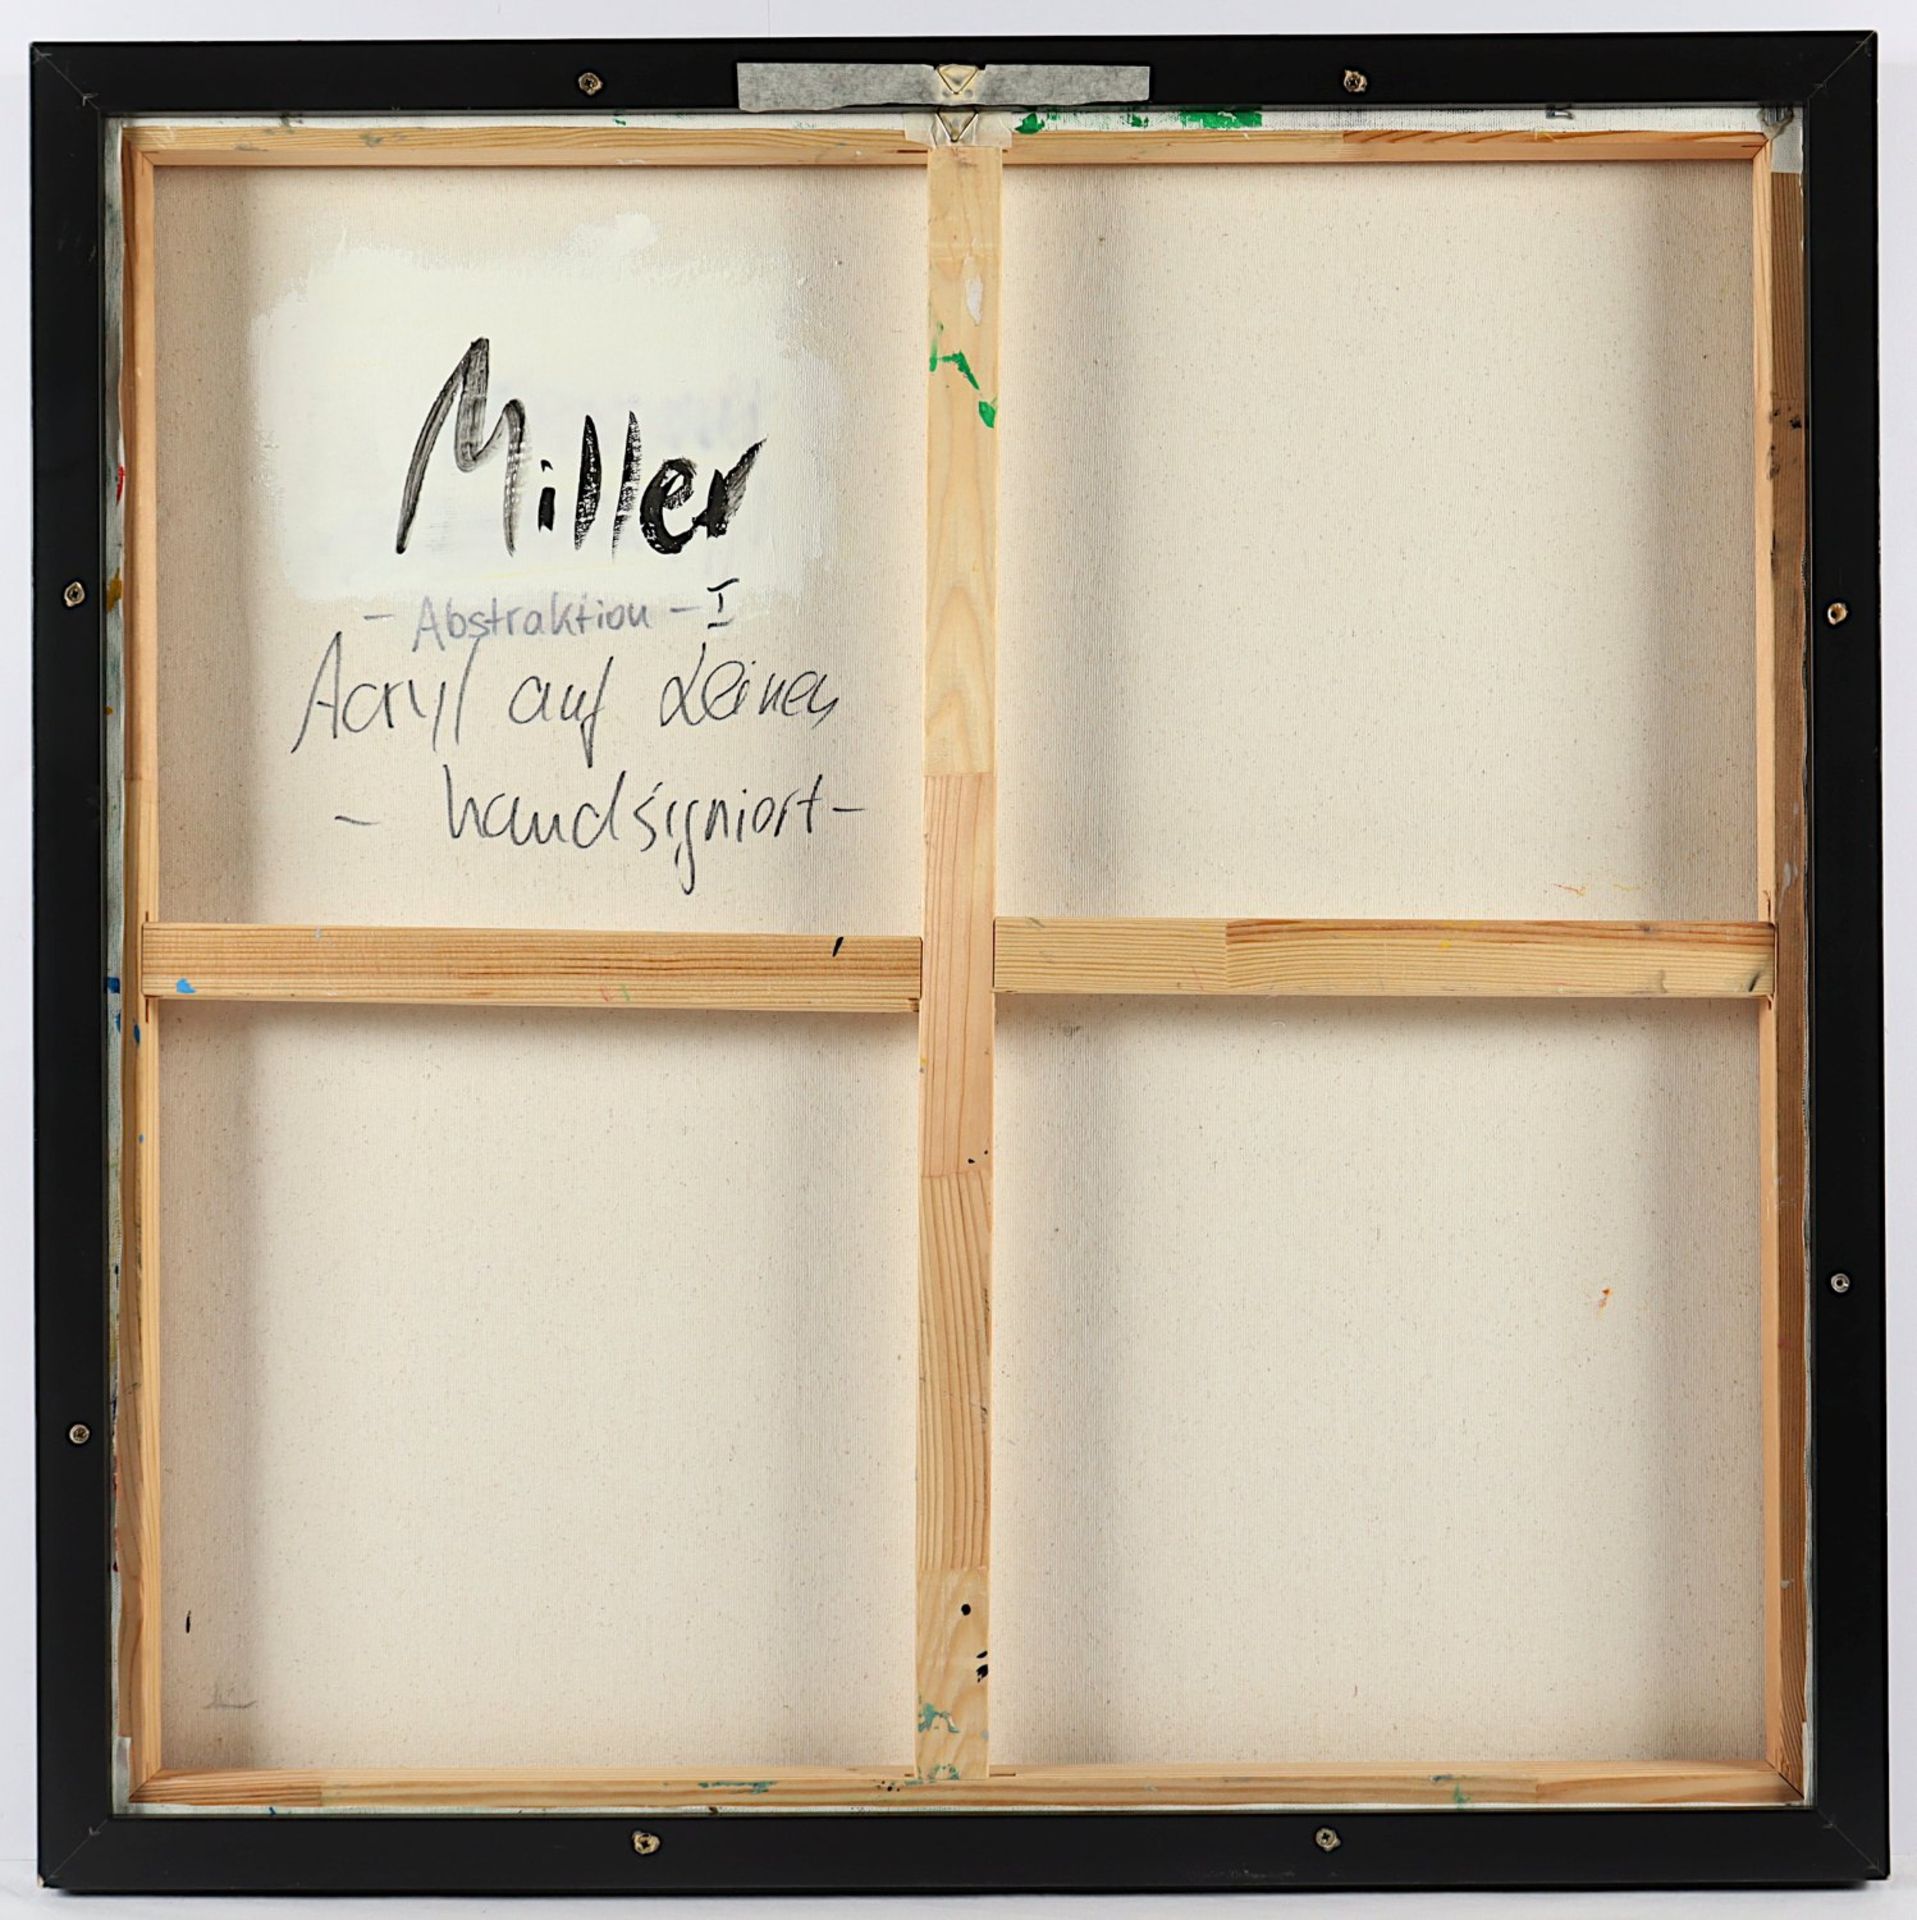 <de>MILLER, C., "Abstraktion I", Acryl/Lwd., 84 x 84, signiert, R.</de> - Bild 2 aus 2